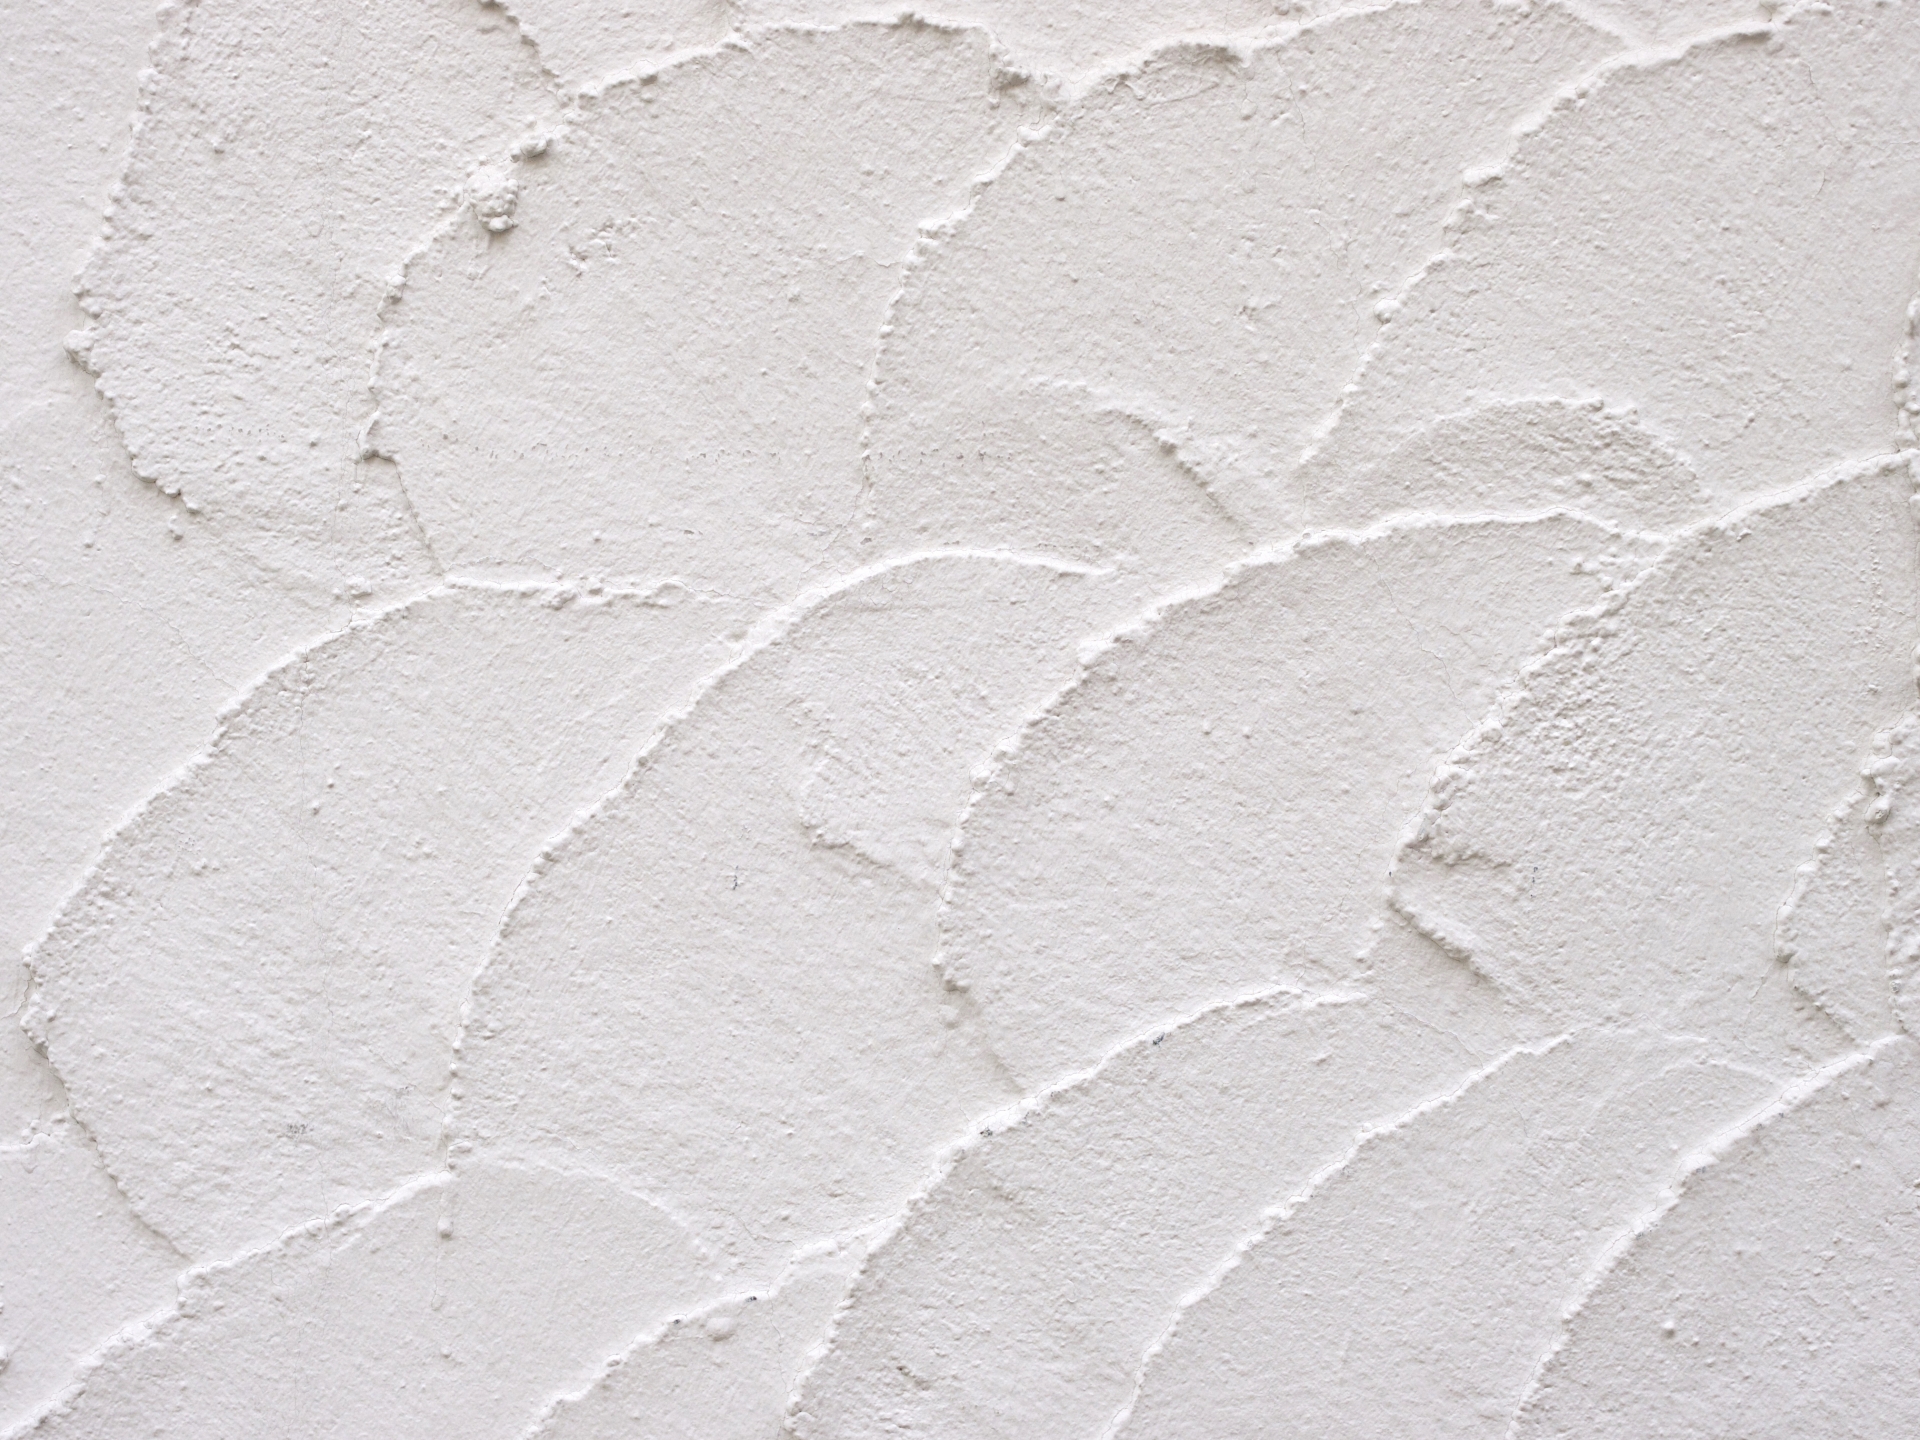 漆喰（しっくい）壁の仕上げは珪藻土と何が違うメリット・デメリットを探る | 建築もゆるりと知る